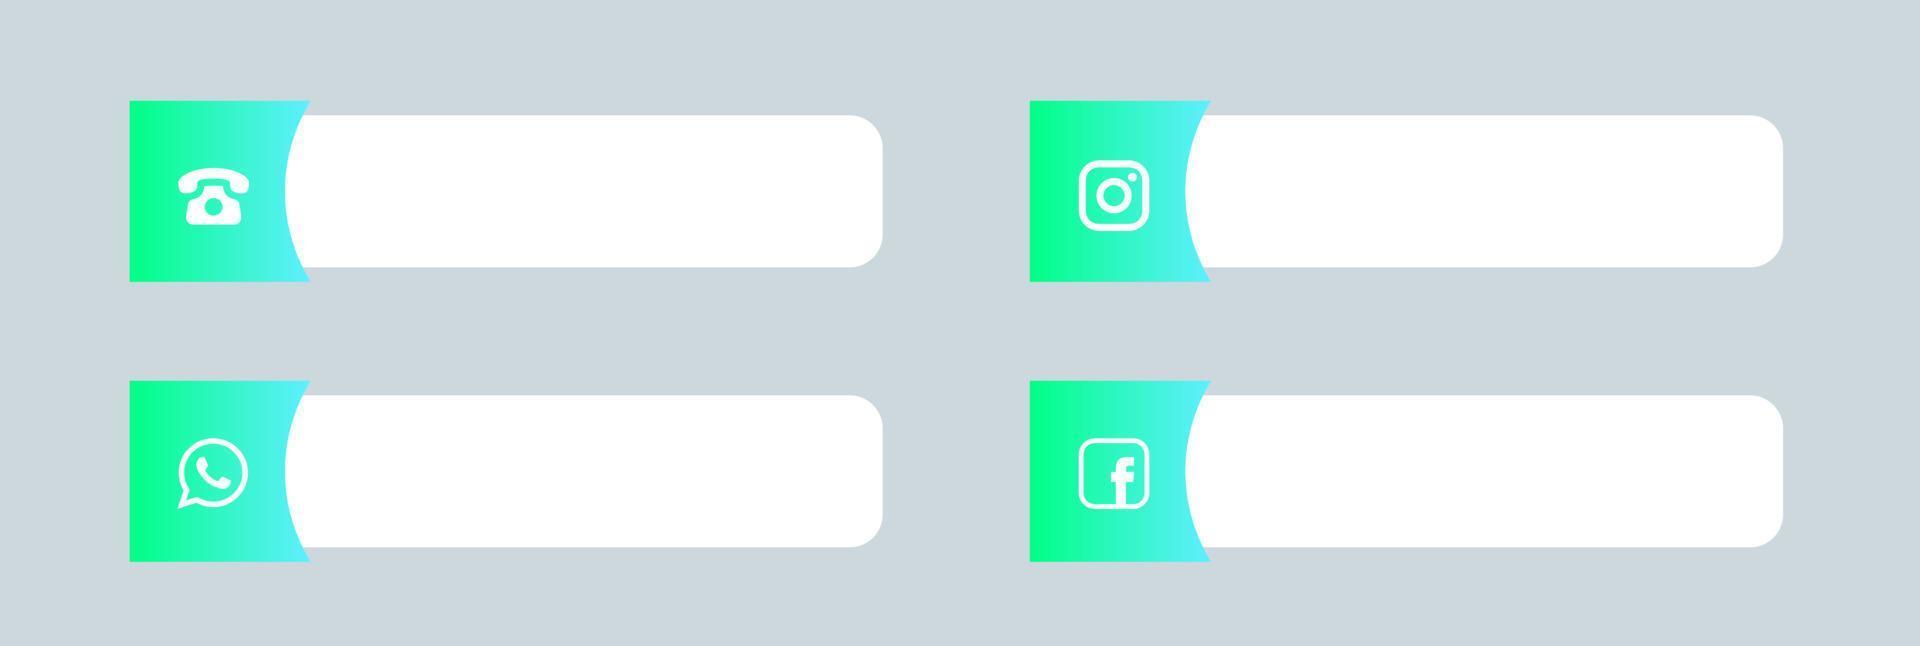 beliebte soziale medien und kontaktsymbole im unteren drittel. vektor